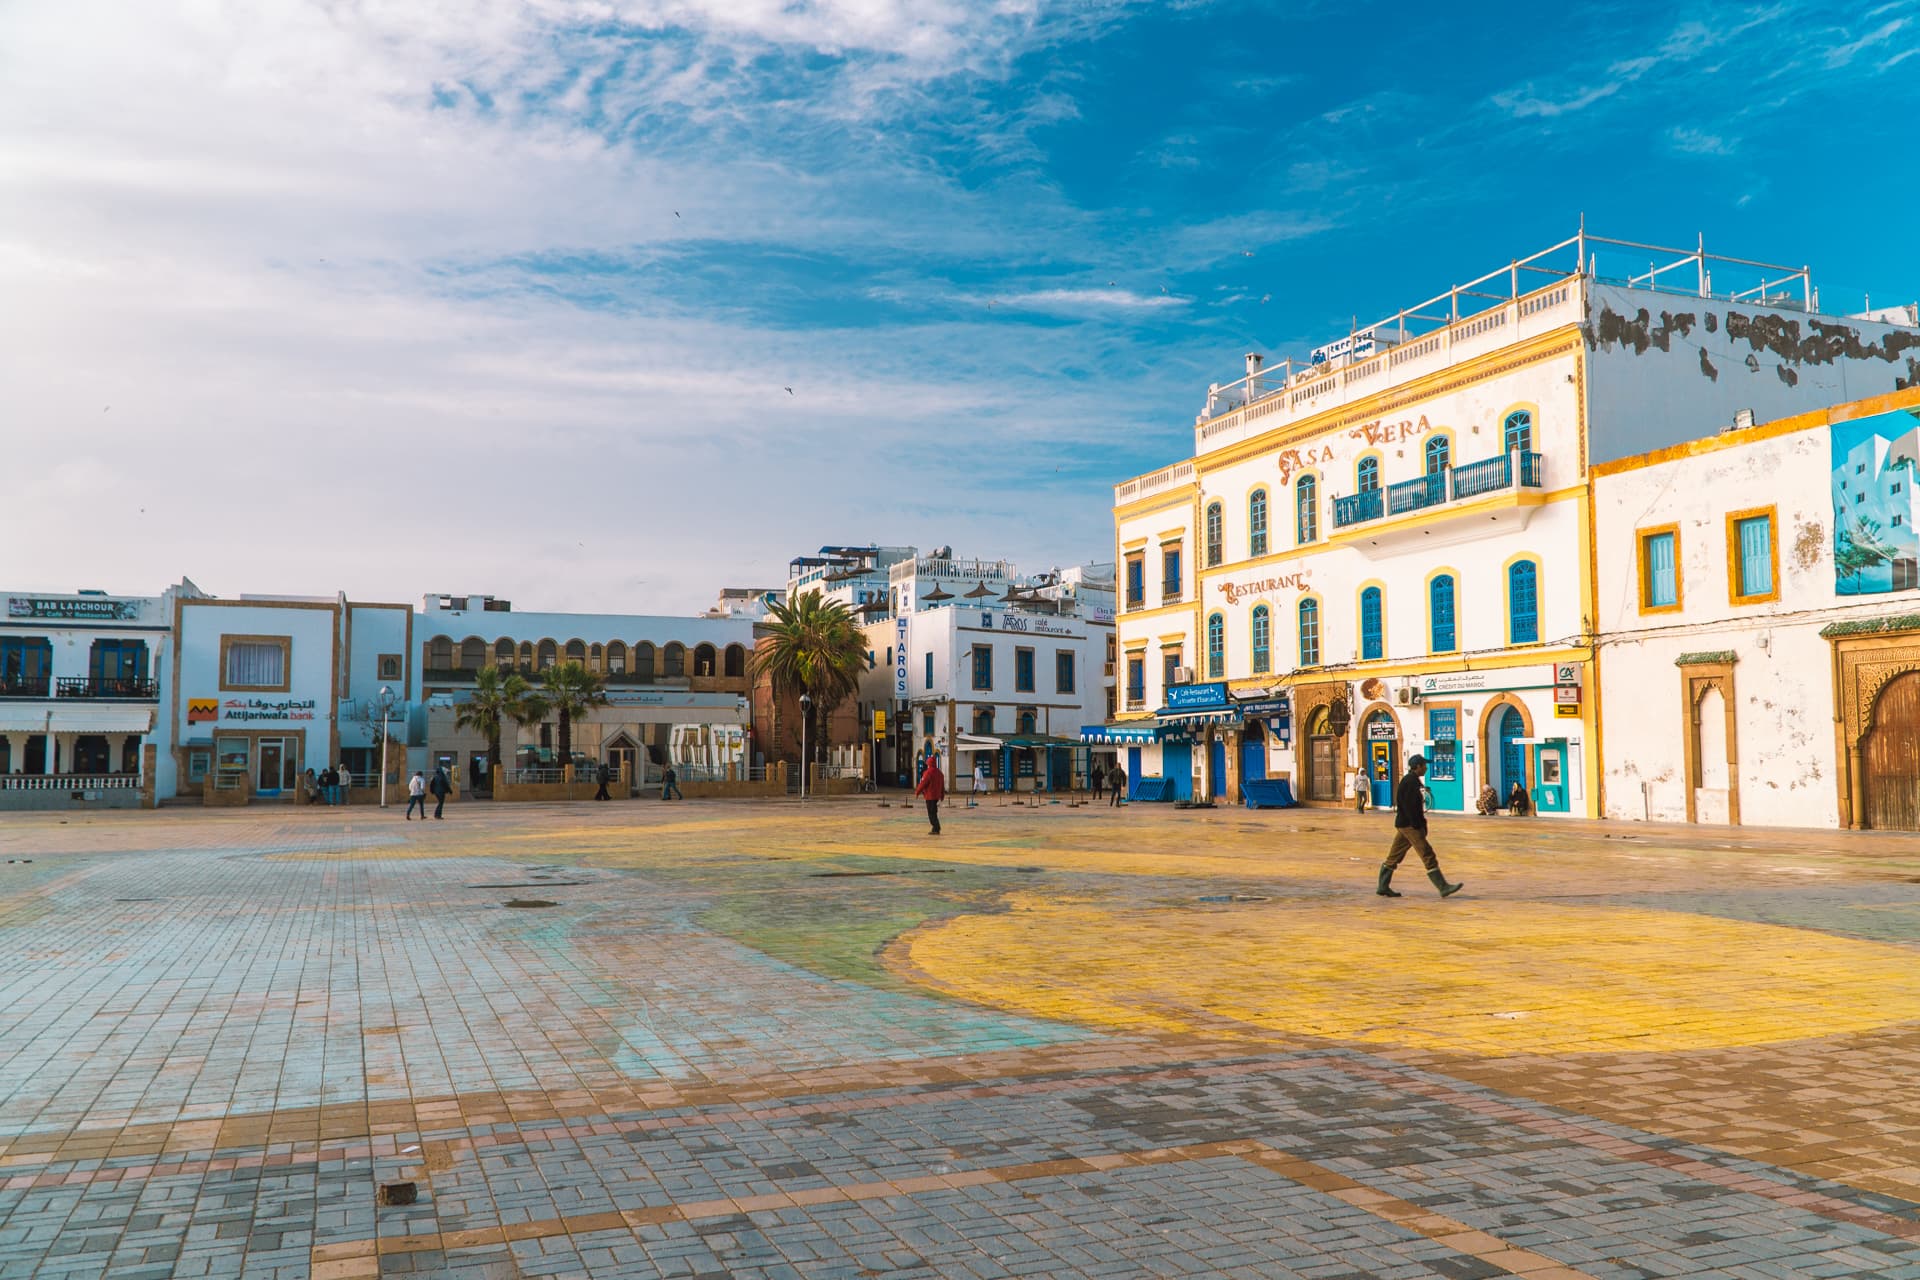 KOlorowe budynki w Essaouirze | Plan wyjazdu do Maroko